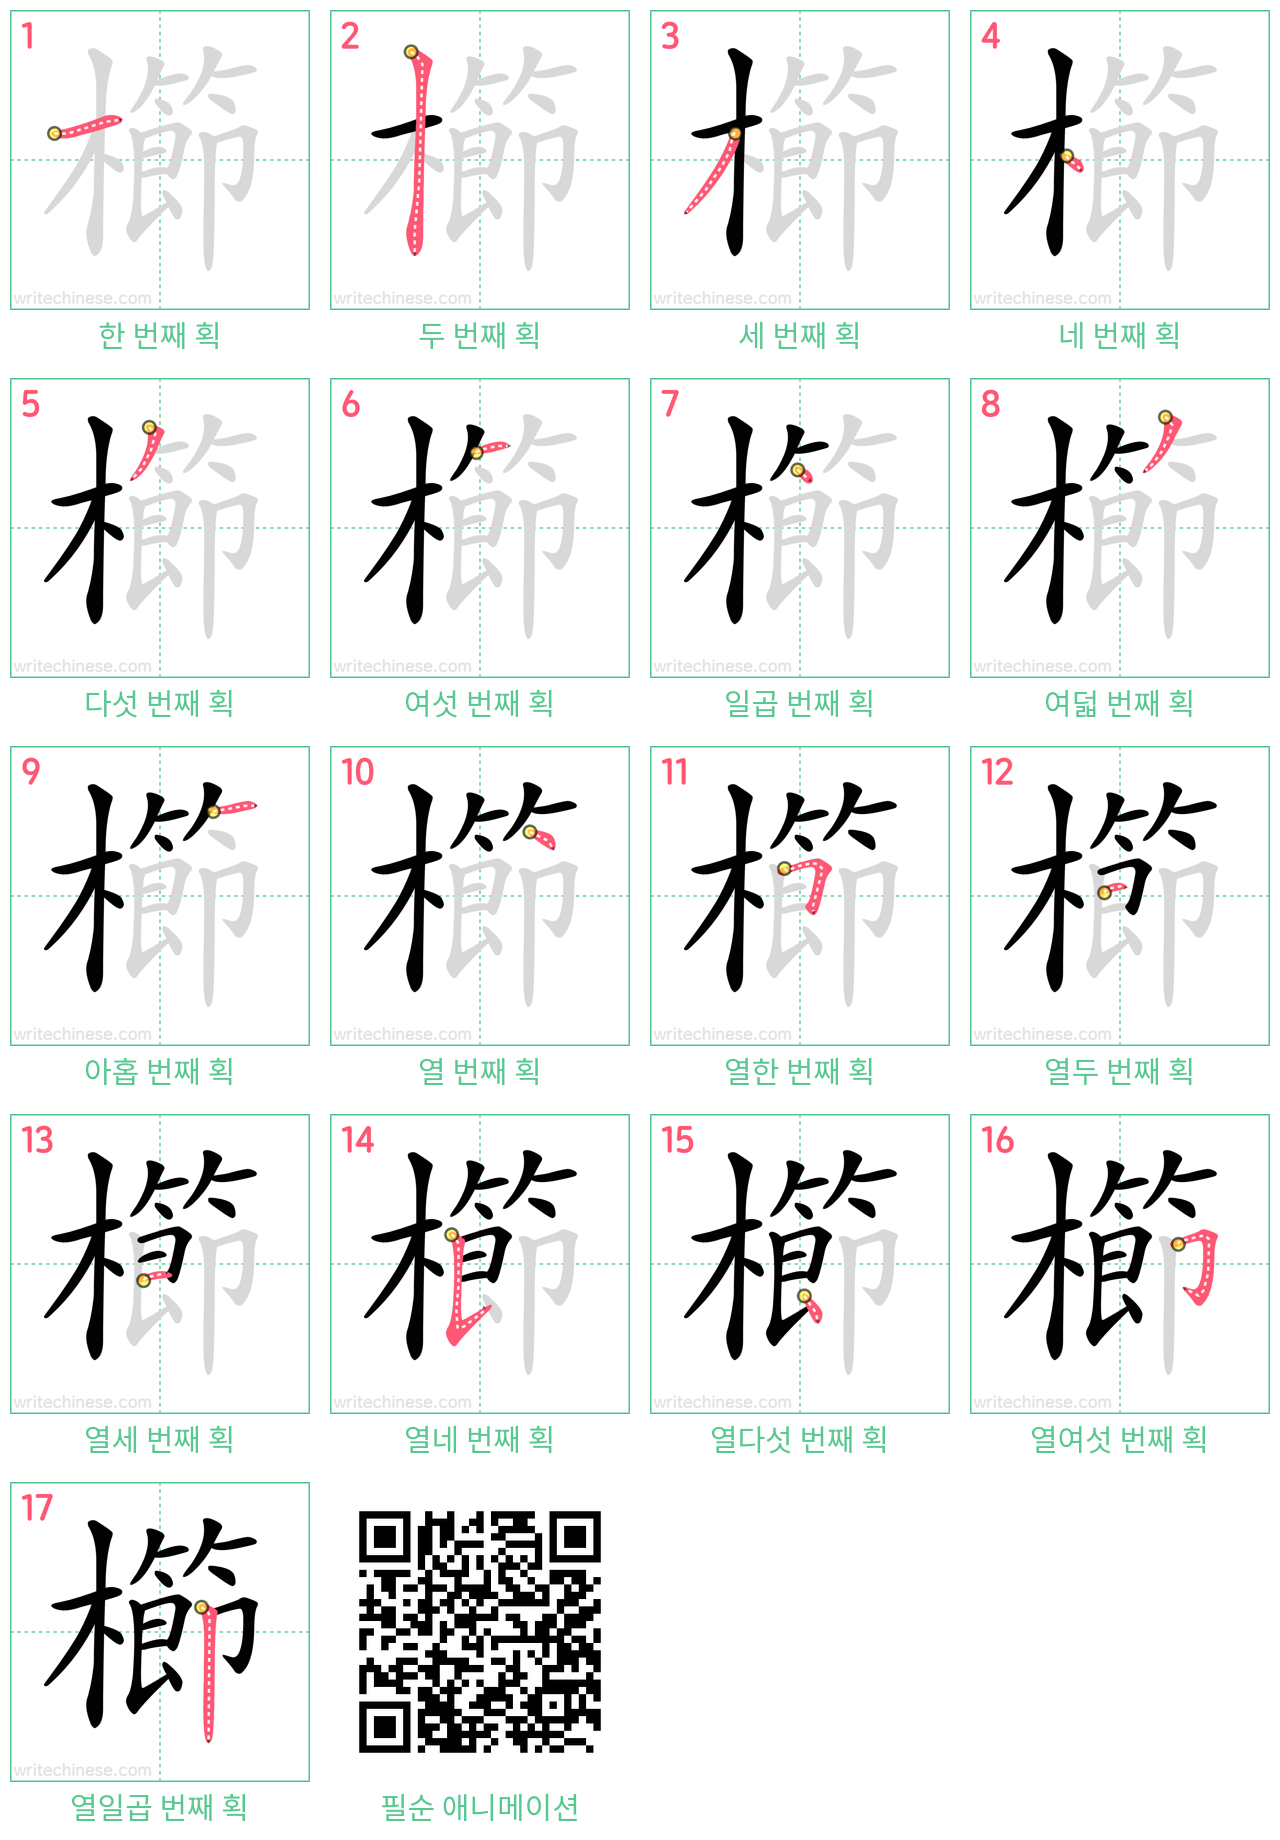 櫛 step-by-step stroke order diagrams